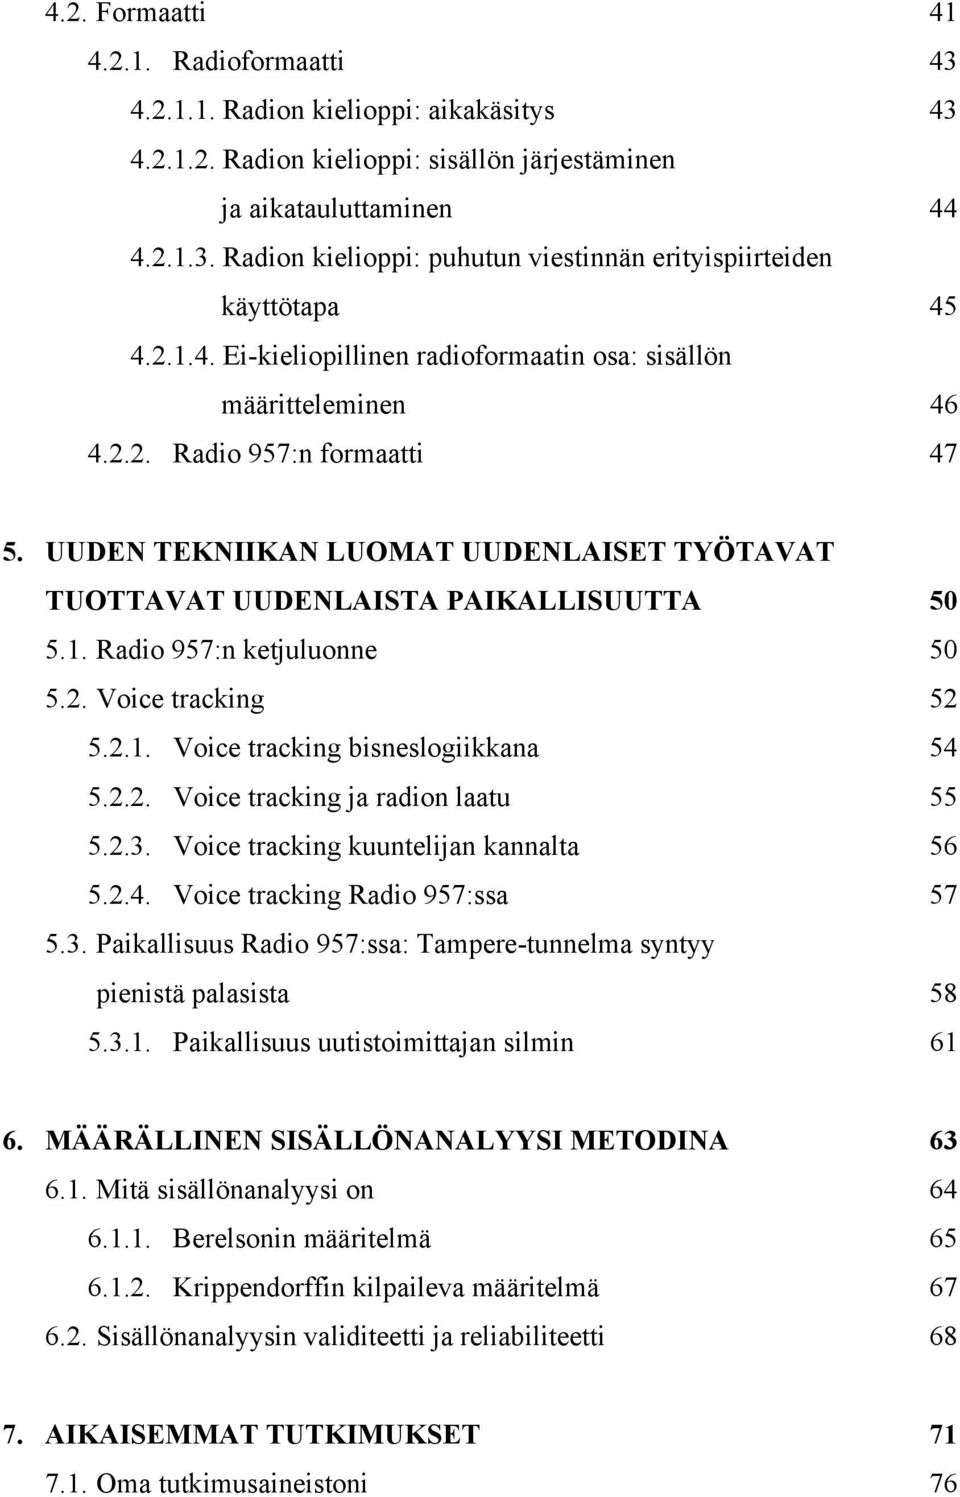 2. Voice tracking 52 5.2.1. Voice tracking bisneslogiikkana 54 5.2.2. Voice tracking ja radion laatu 55 5.2.3. Voice tracking kuuntelijan kannalta 56 5.2.4. Voice tracking Radio 957:ssa 57 5.3. Paikallisuus Radio 957:ssa: Tampere-tunnelma syntyy pienistä palasista 58 5.